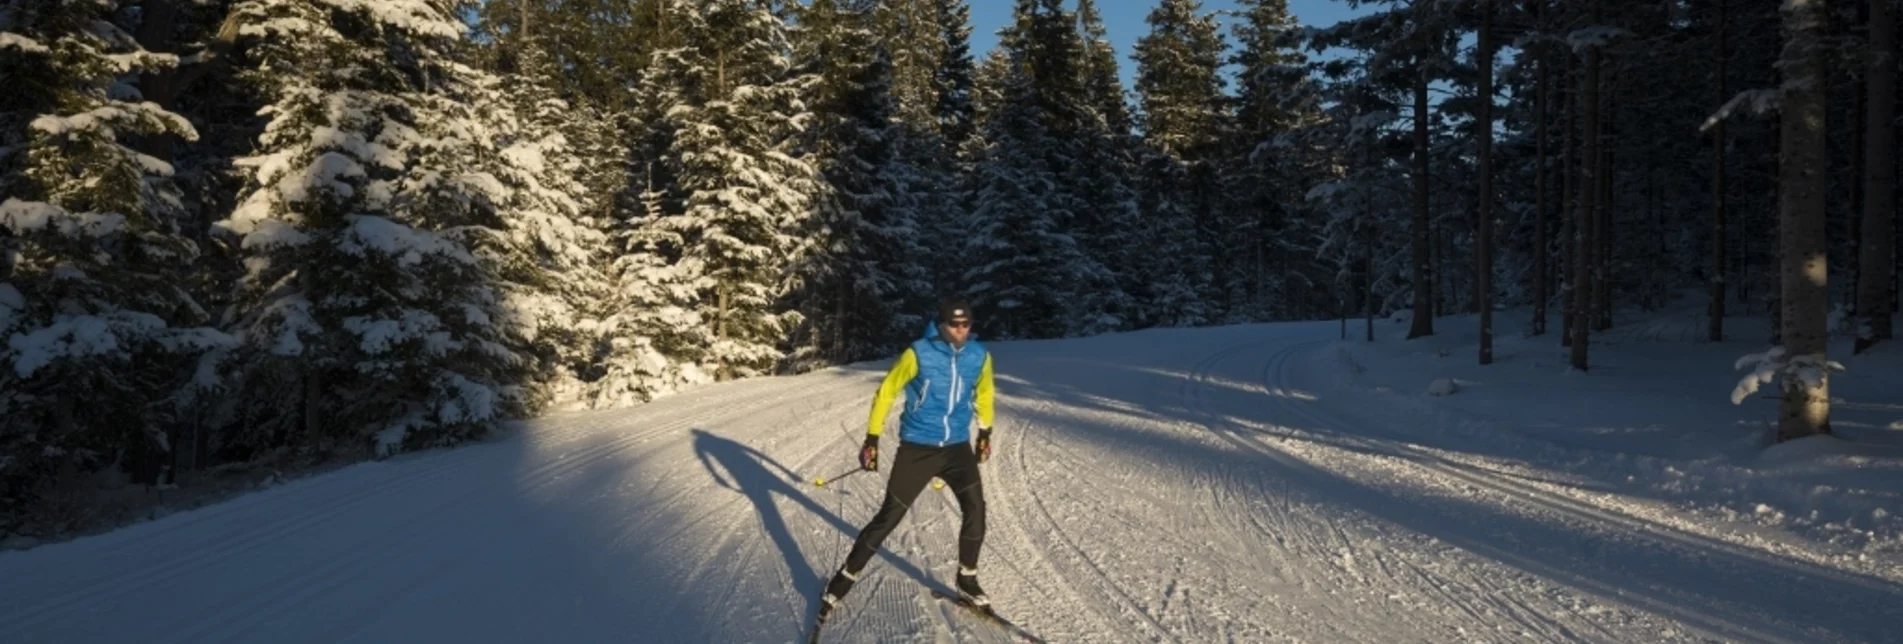 Ski-nordic-classic Sport trail VII Joglland trail - Touren-Impression #1 | © GH Orthofer